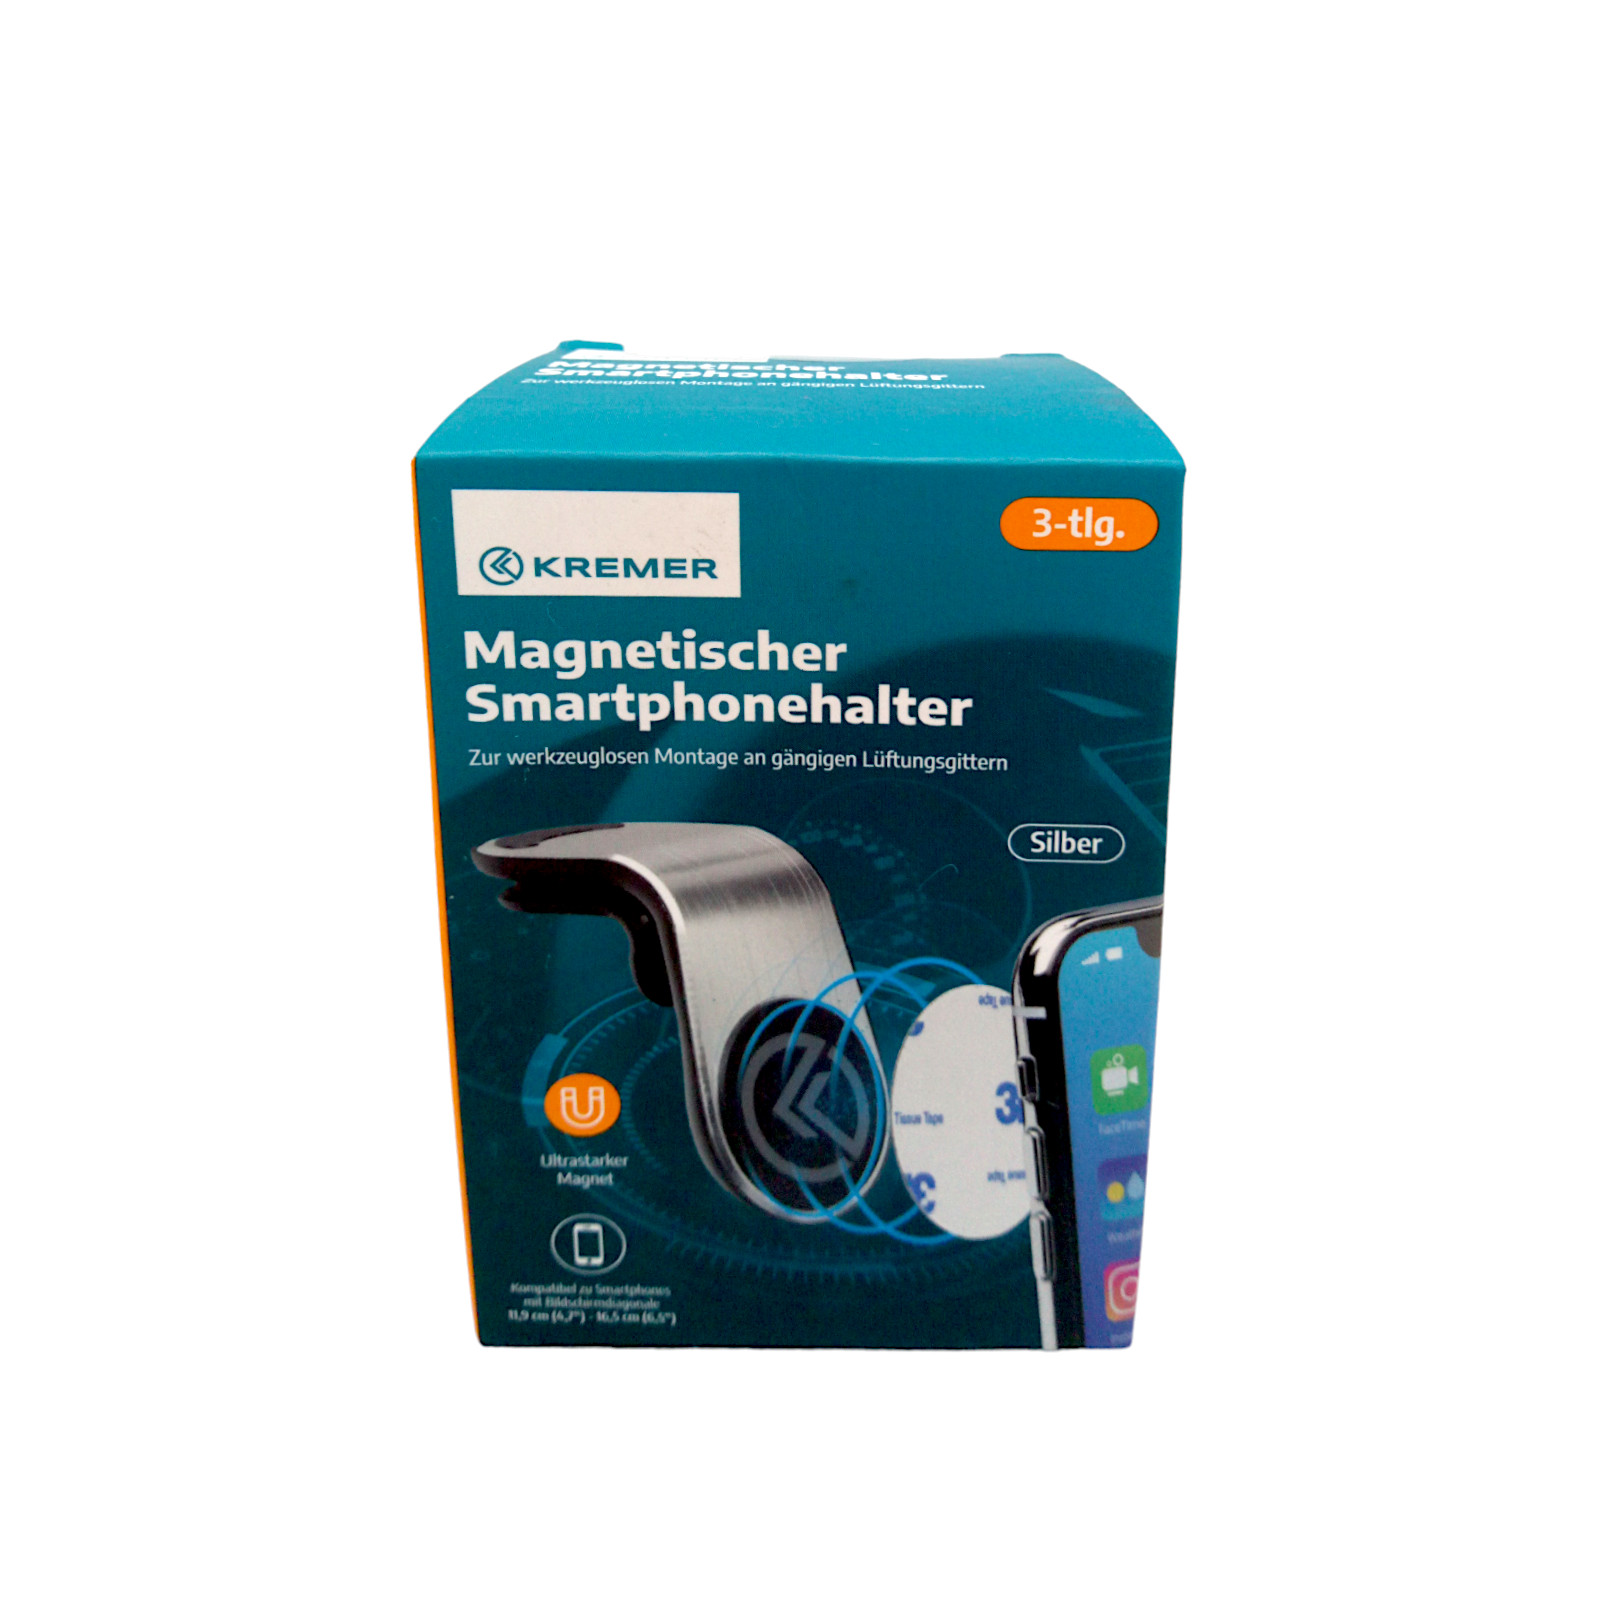 Magnetischer Smartphonehalter